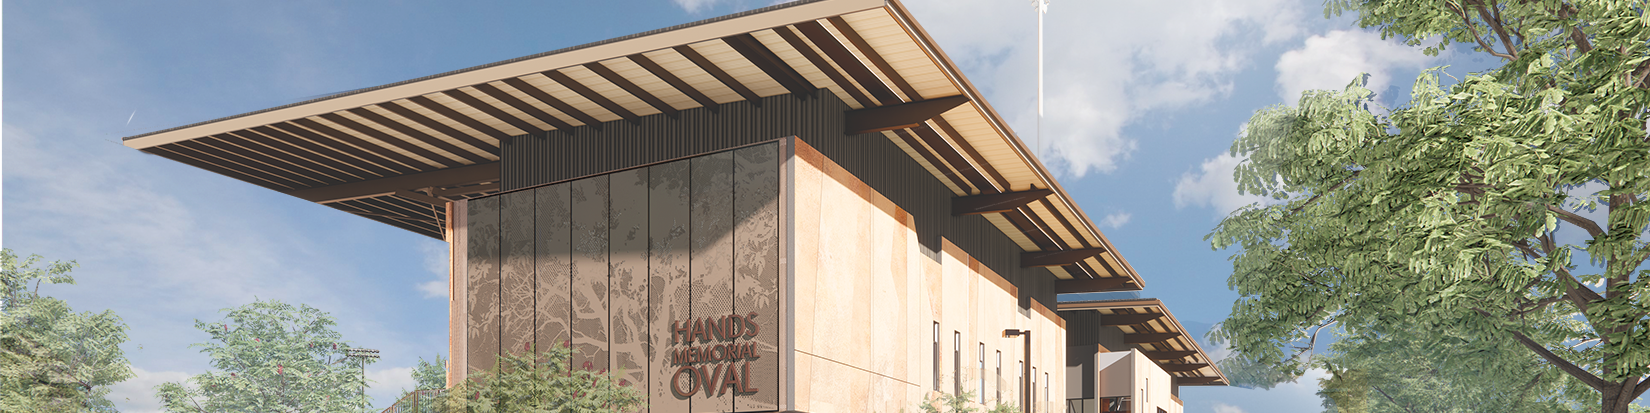 Design render Hands Memorial Oval redevelopment aspect ratio 4 1